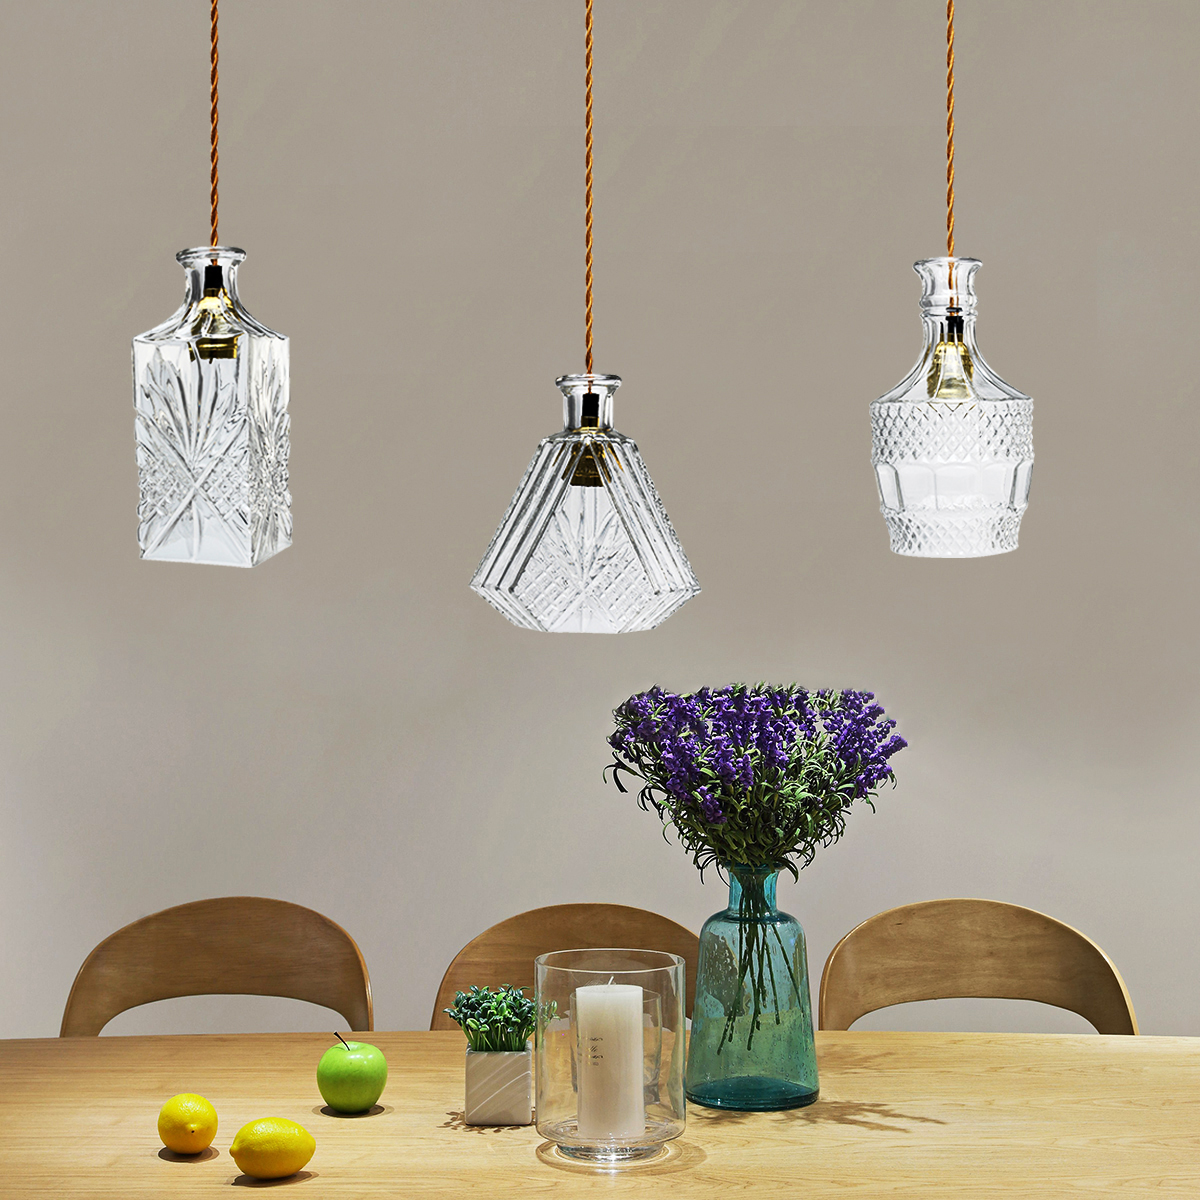 Vintage-Decanter-Bottle-Pendant-Ceiling-Light-Chandelier-Lamp-Fixture-Home-Decor-1634446-2